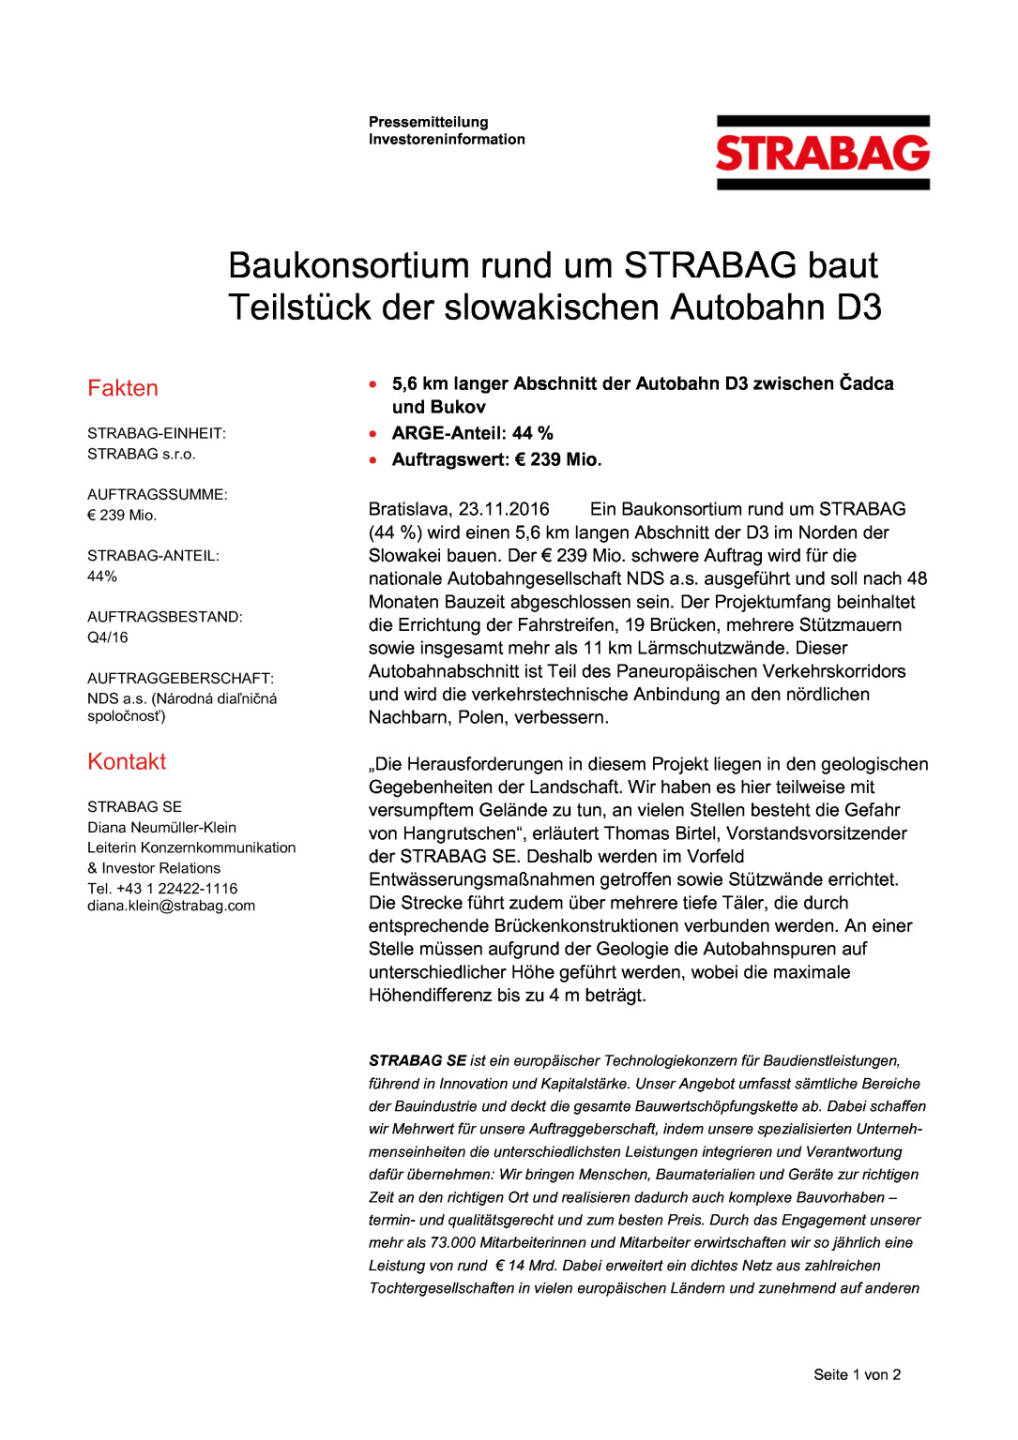 Baukonsortium rund um Strabag baut Teilstück der slowakischen Autobahn D3, Seite 1/2, komplettes Dokument unter http://boerse-social.com/static/uploads/file_1991_baukonsortium_rund_um_strabag_baut_teilstuck_der_slowakischen_autobahn_d3.pdf